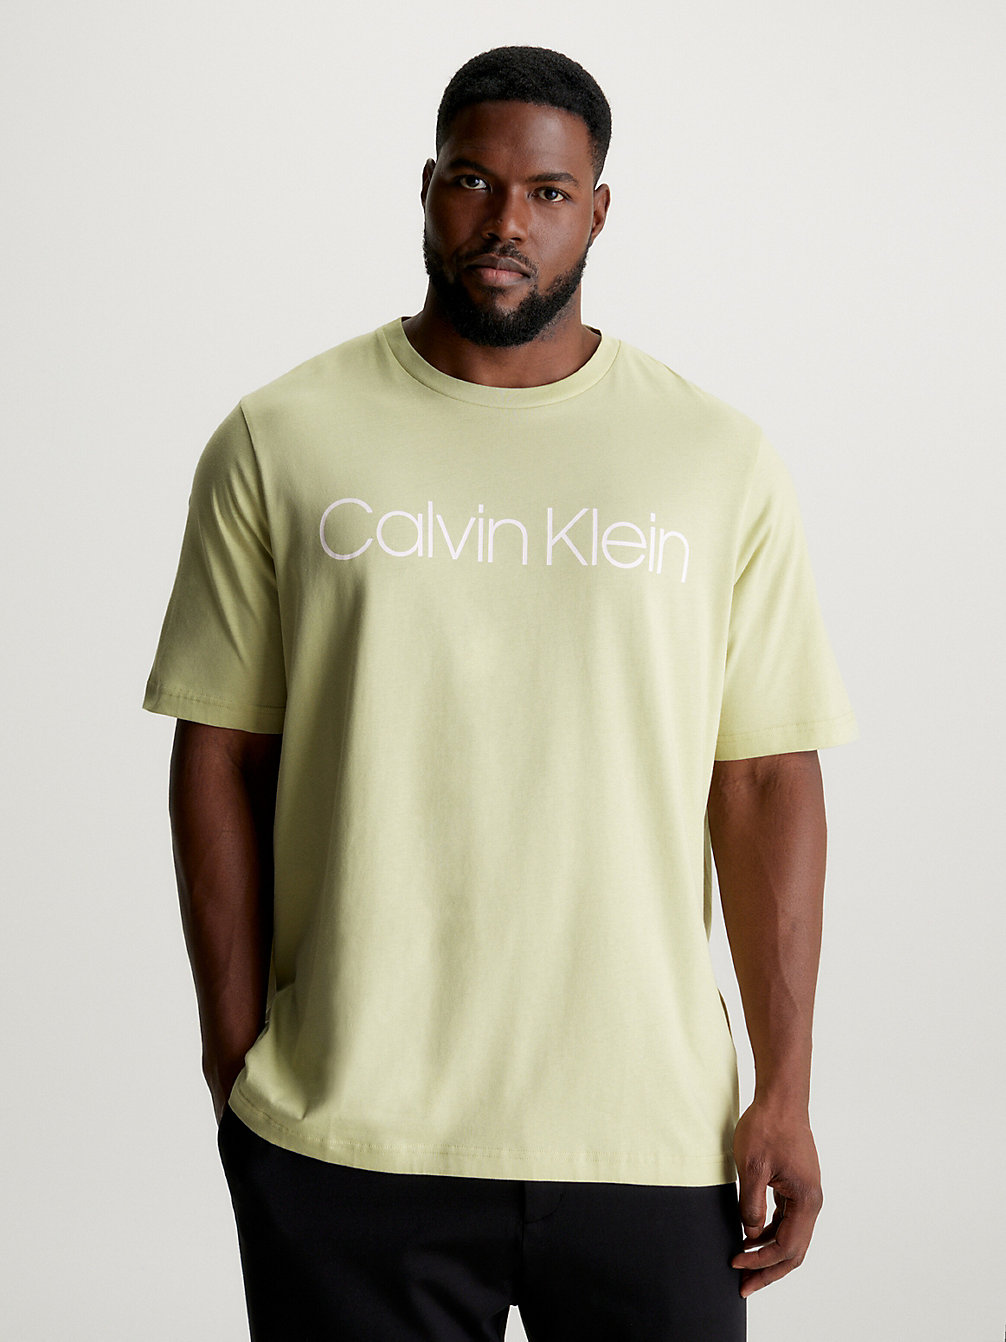 HERB TEA T-Shirt Aus Bio-Baumwolle In Großen Größen undefined Herren Calvin Klein